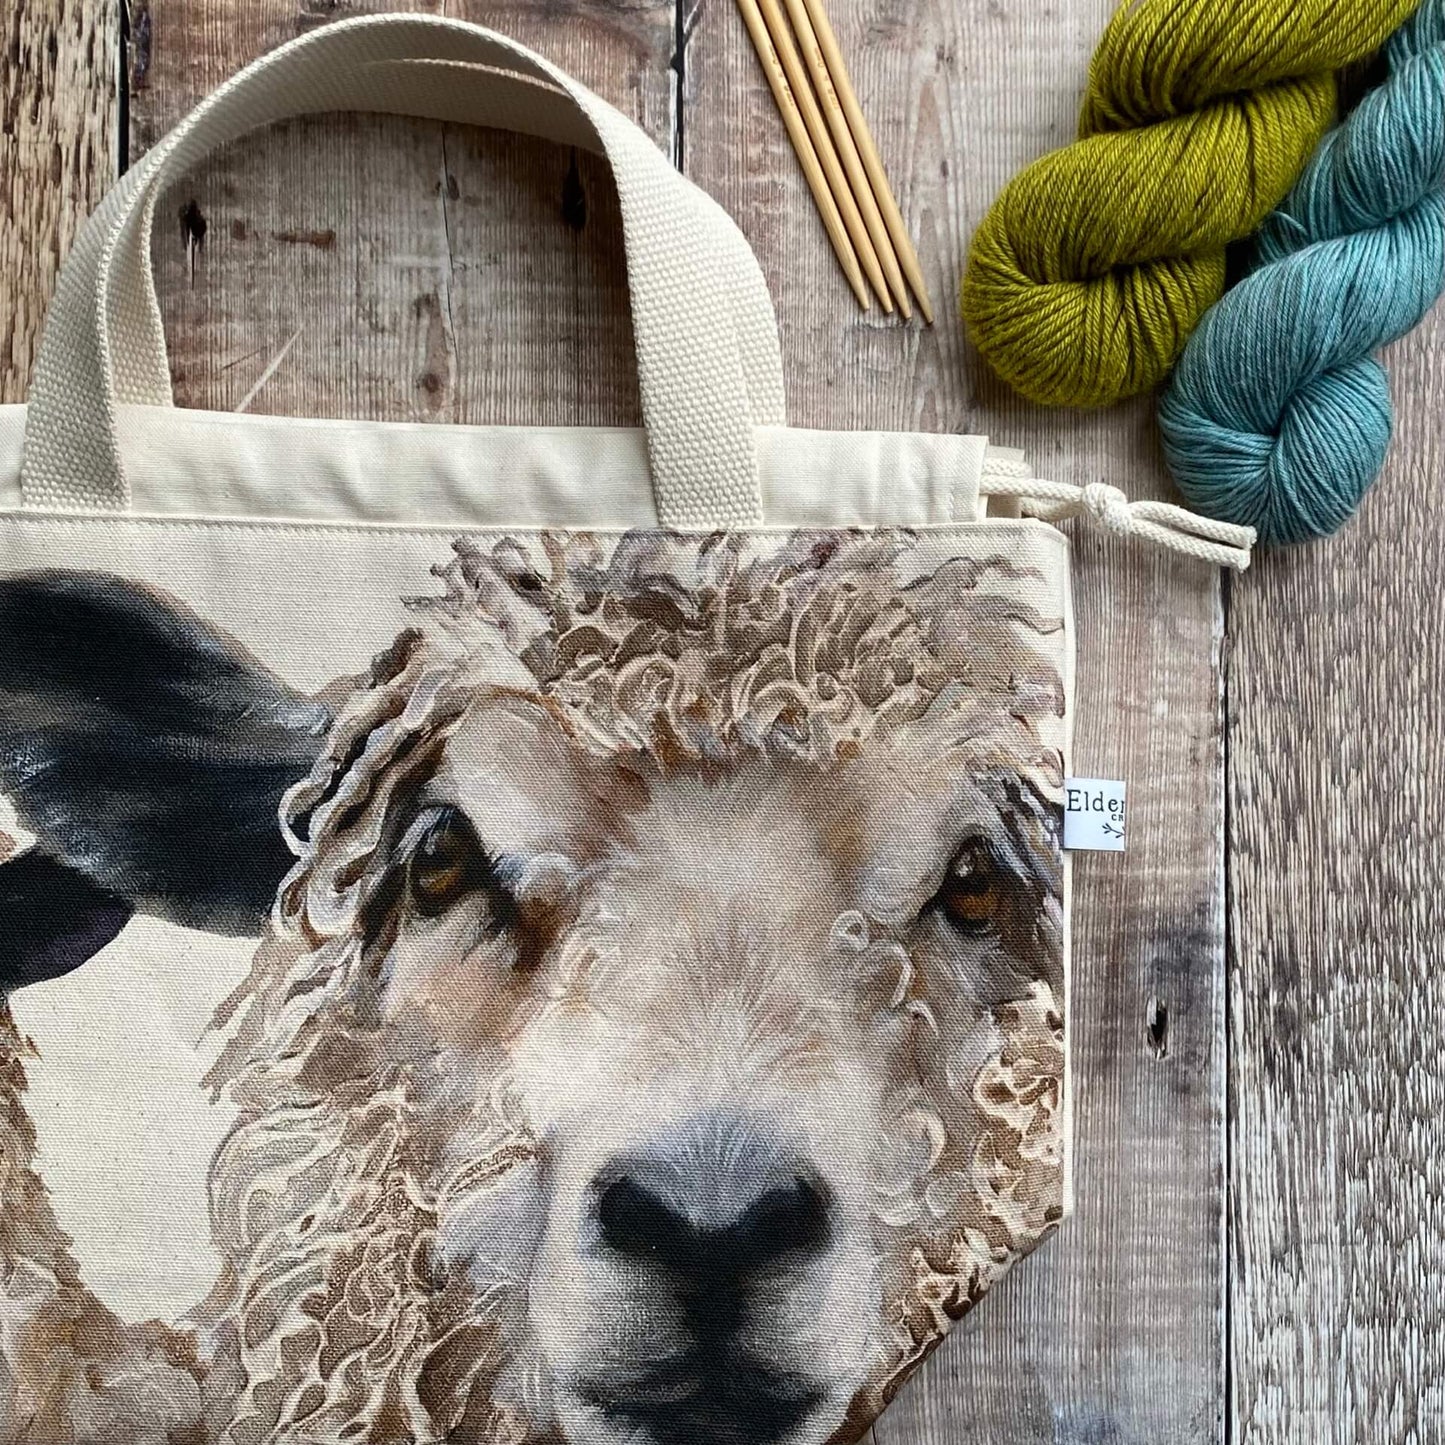 Sheep Design Jute 'One More Row' Knitting Bag at Lambland